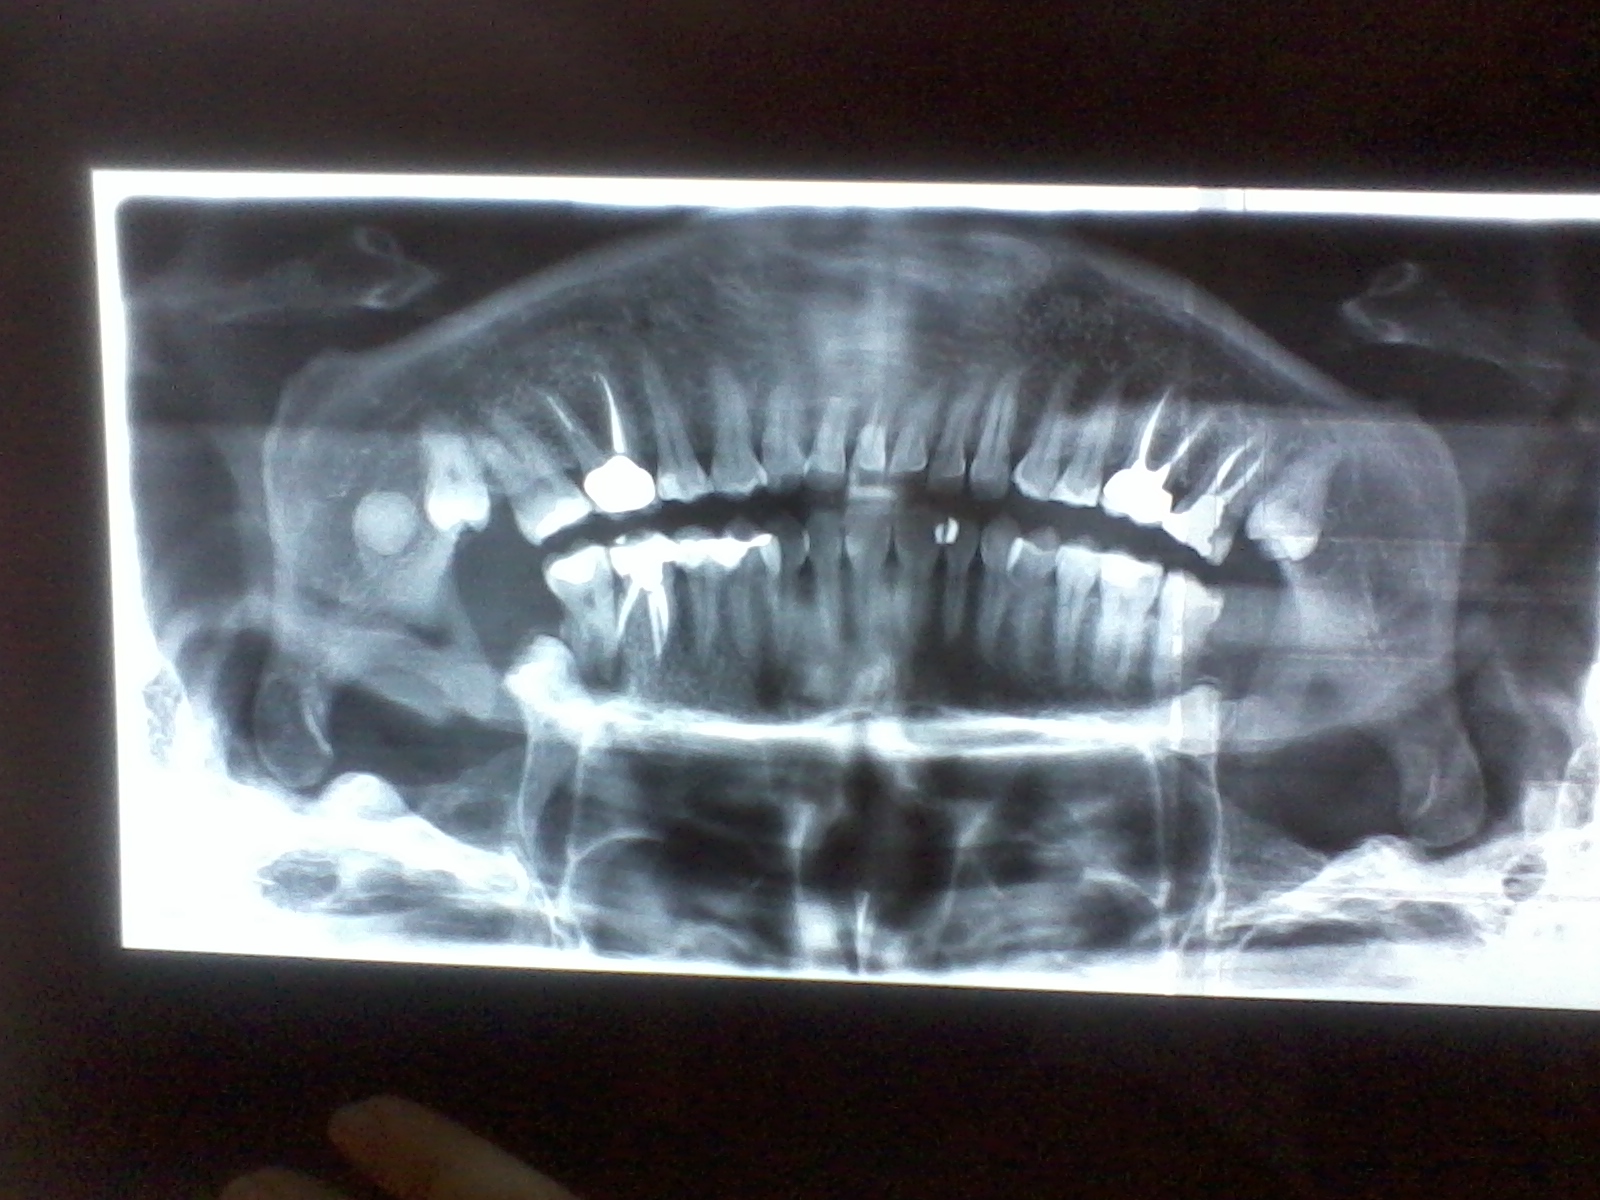 Tra pochi giorni dovrò procedere all'estrazione del settimo dente causa granuloma